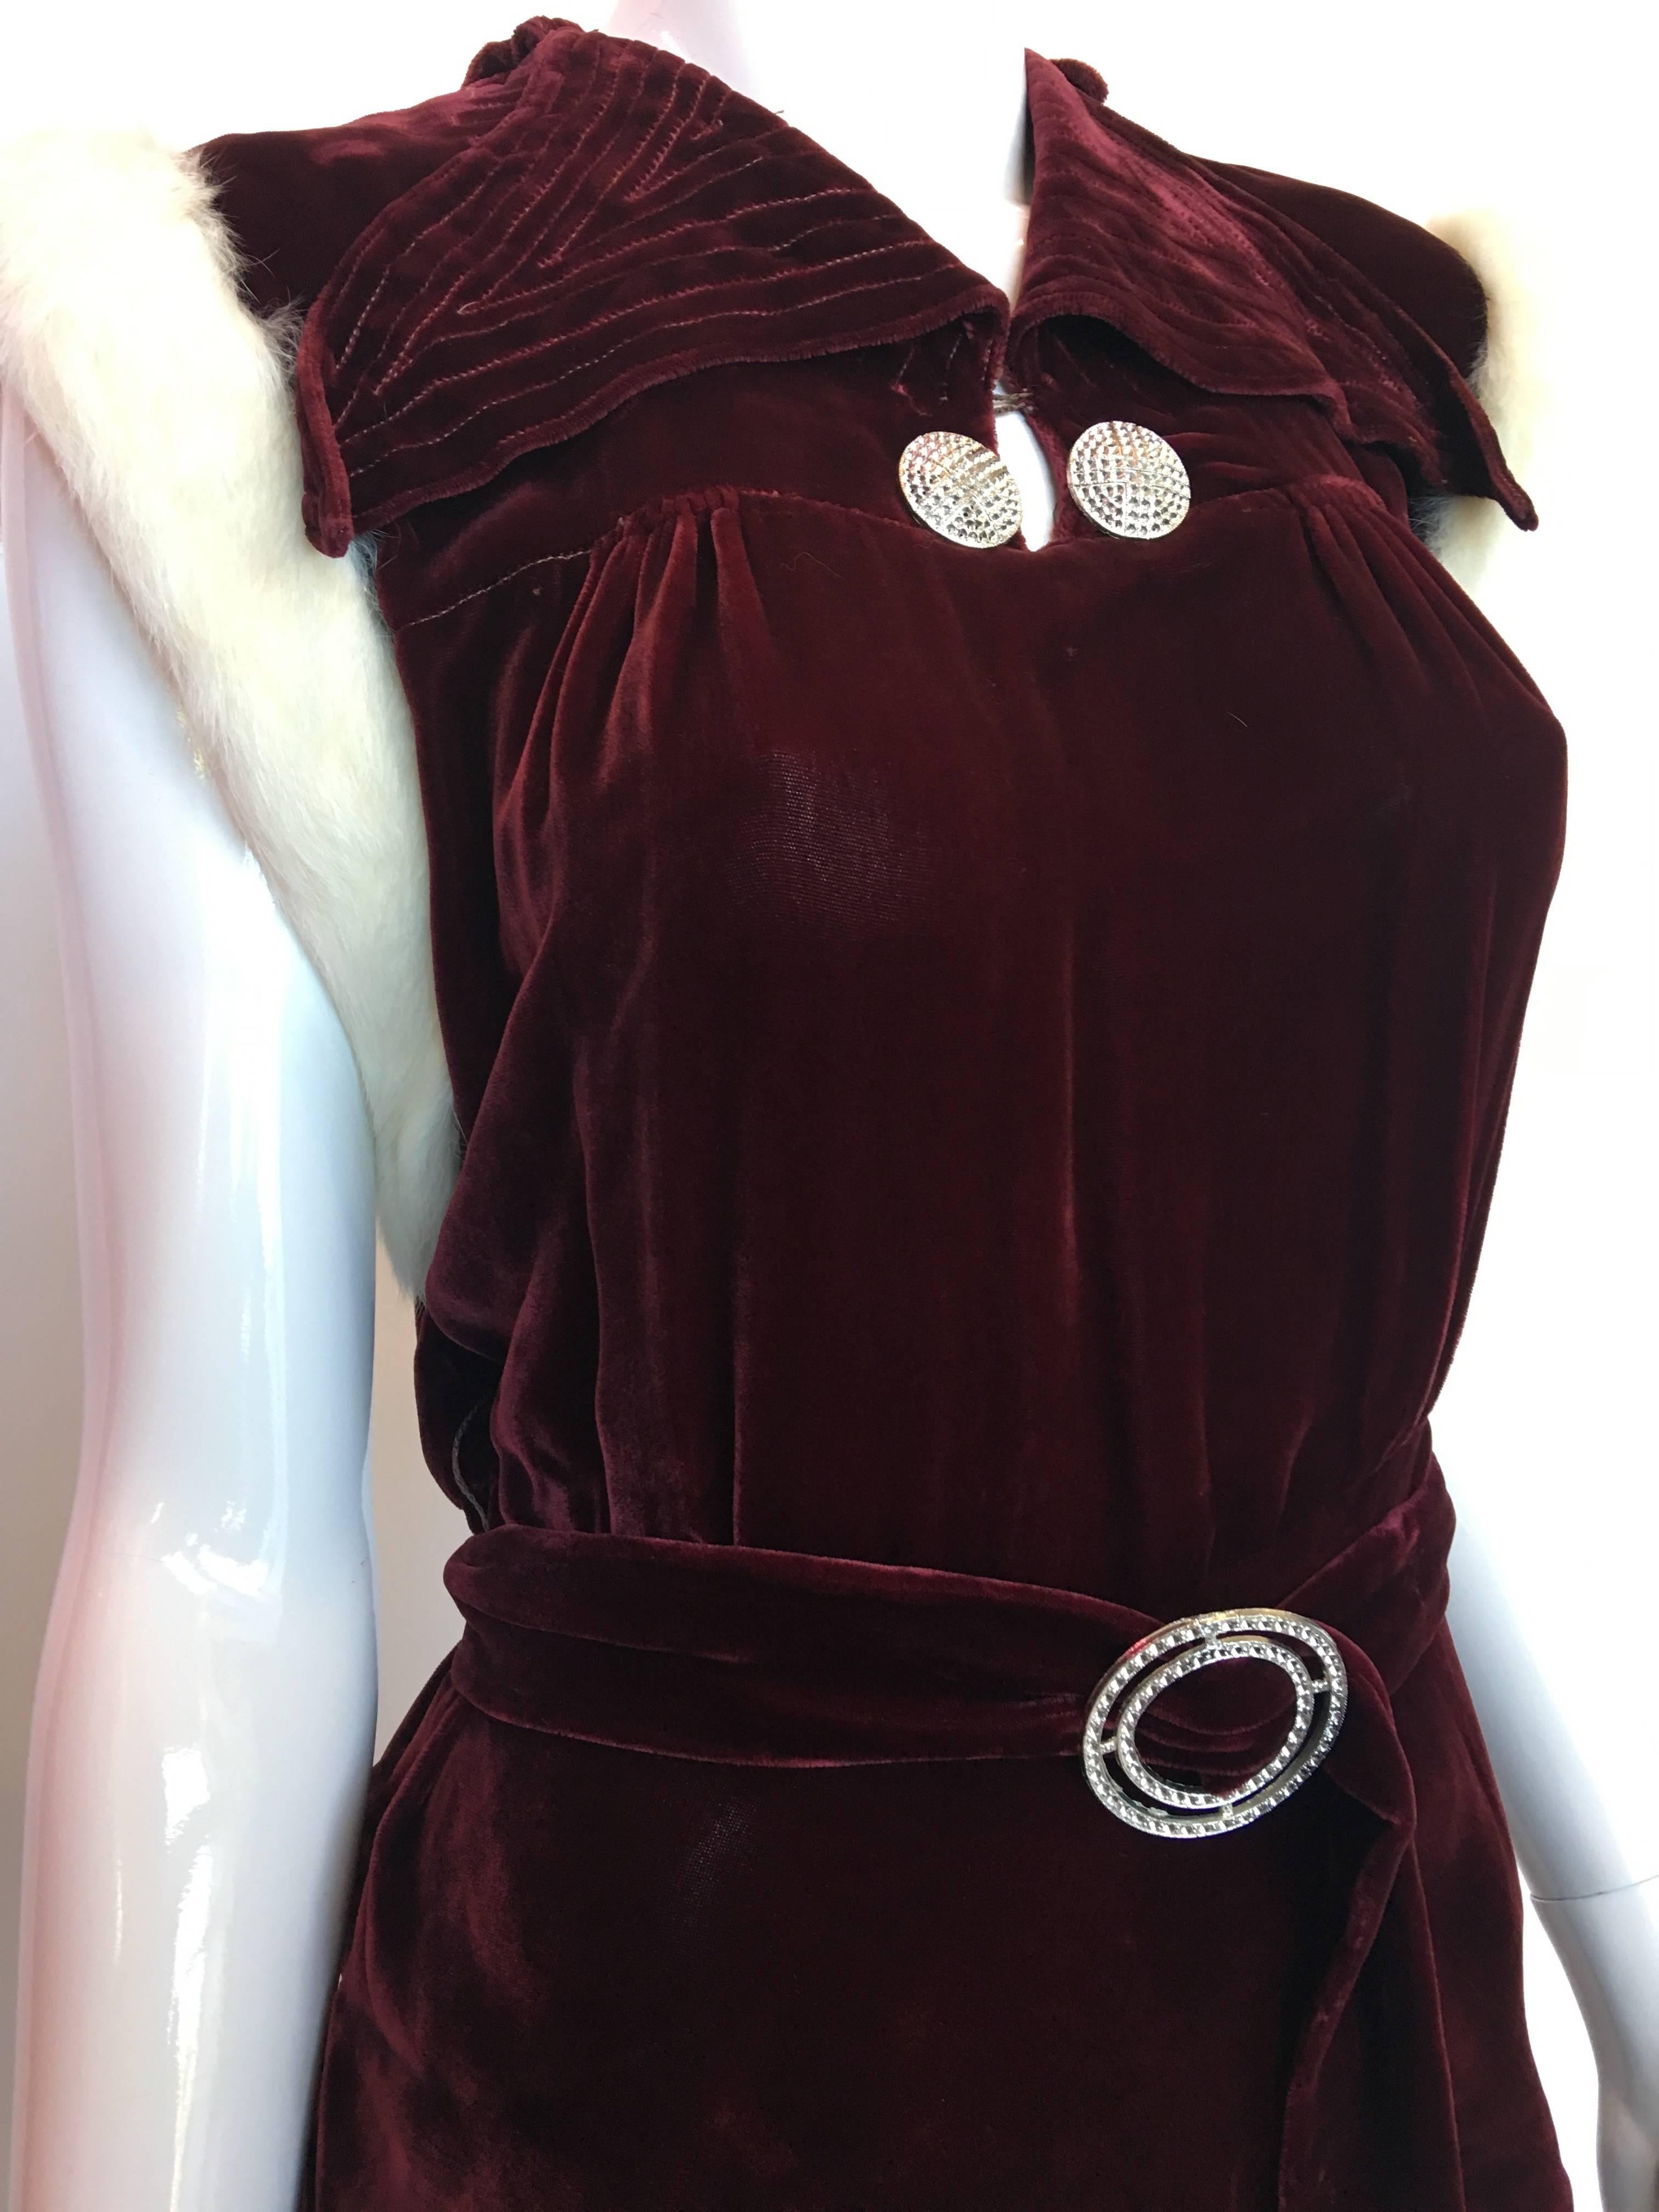 burgunderrotes Samtkleid mit Kaninchenfellbesatz an den Ärmeln aus den 1930er Jahren

Schultern: 17